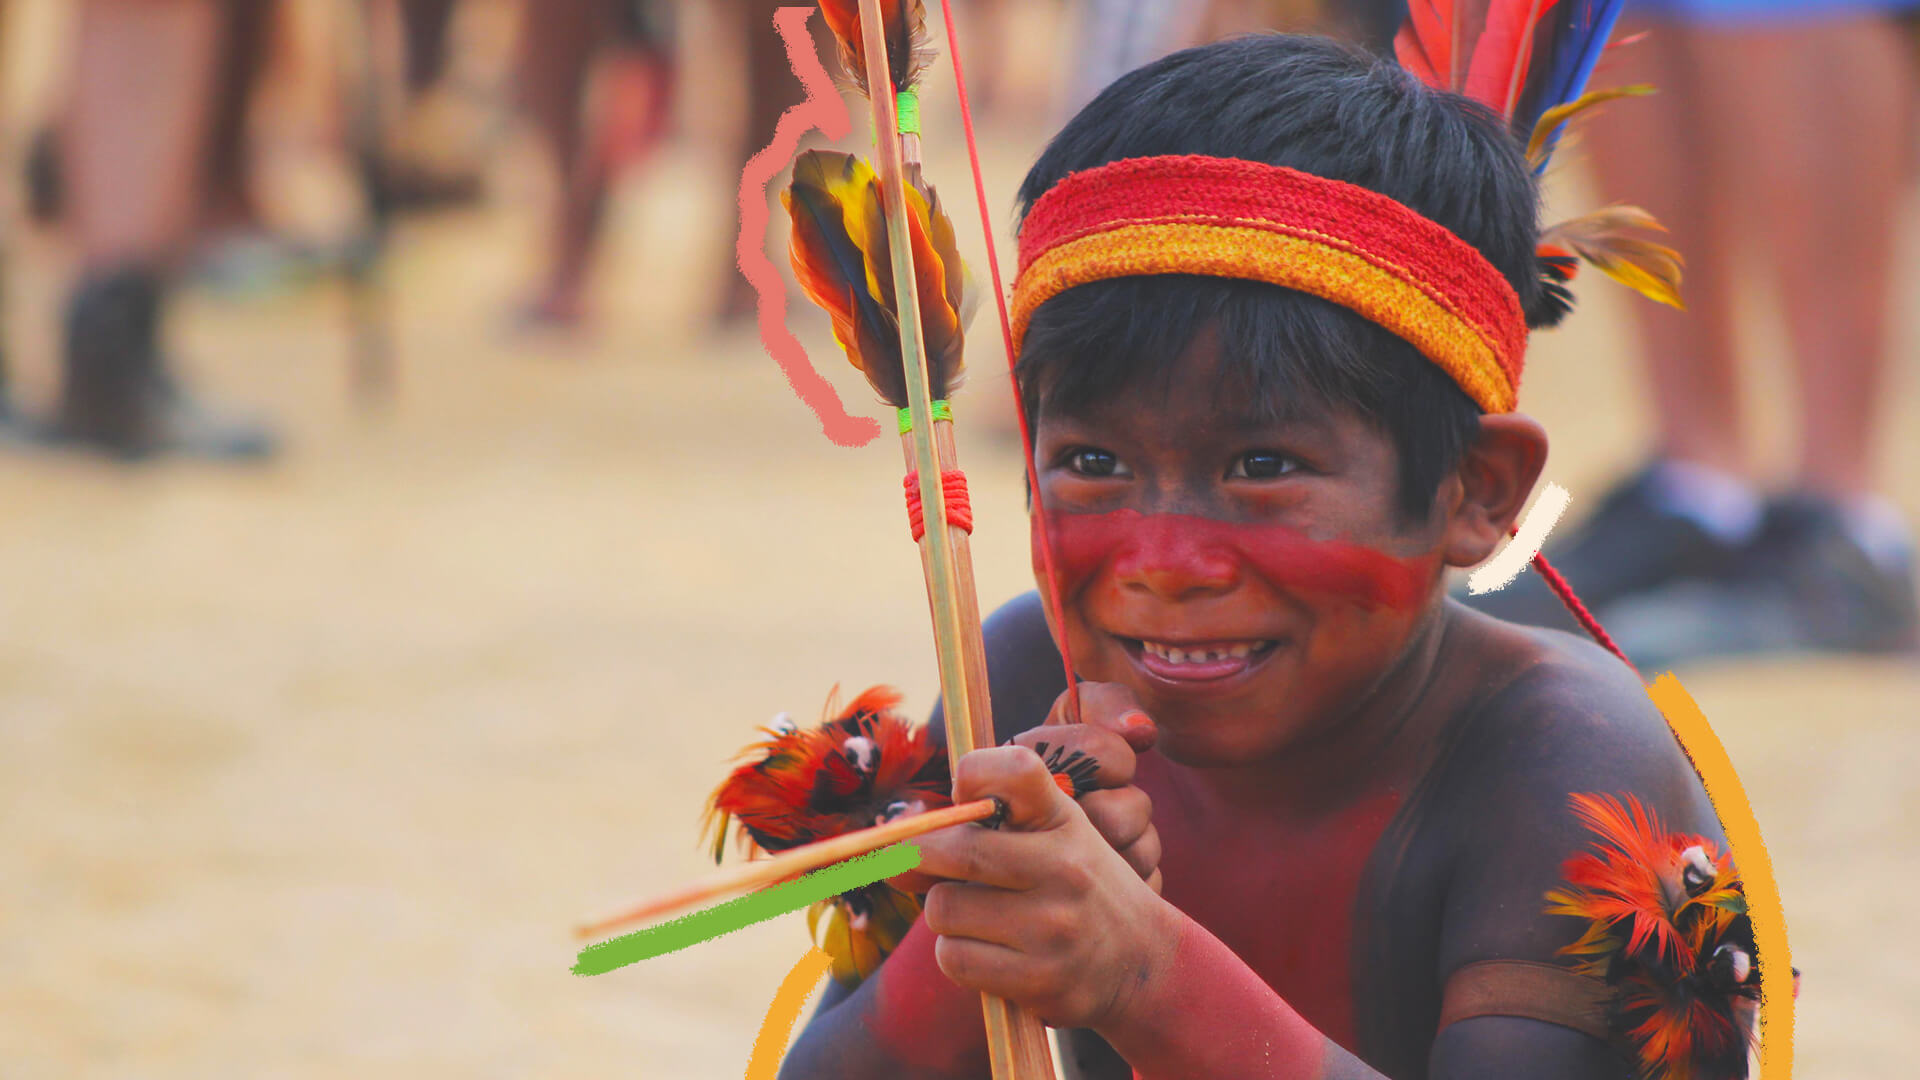 Na foto, um menino indígena sorri enquanto segura um arco e flecha. A imagem possui intervenções coloridas.